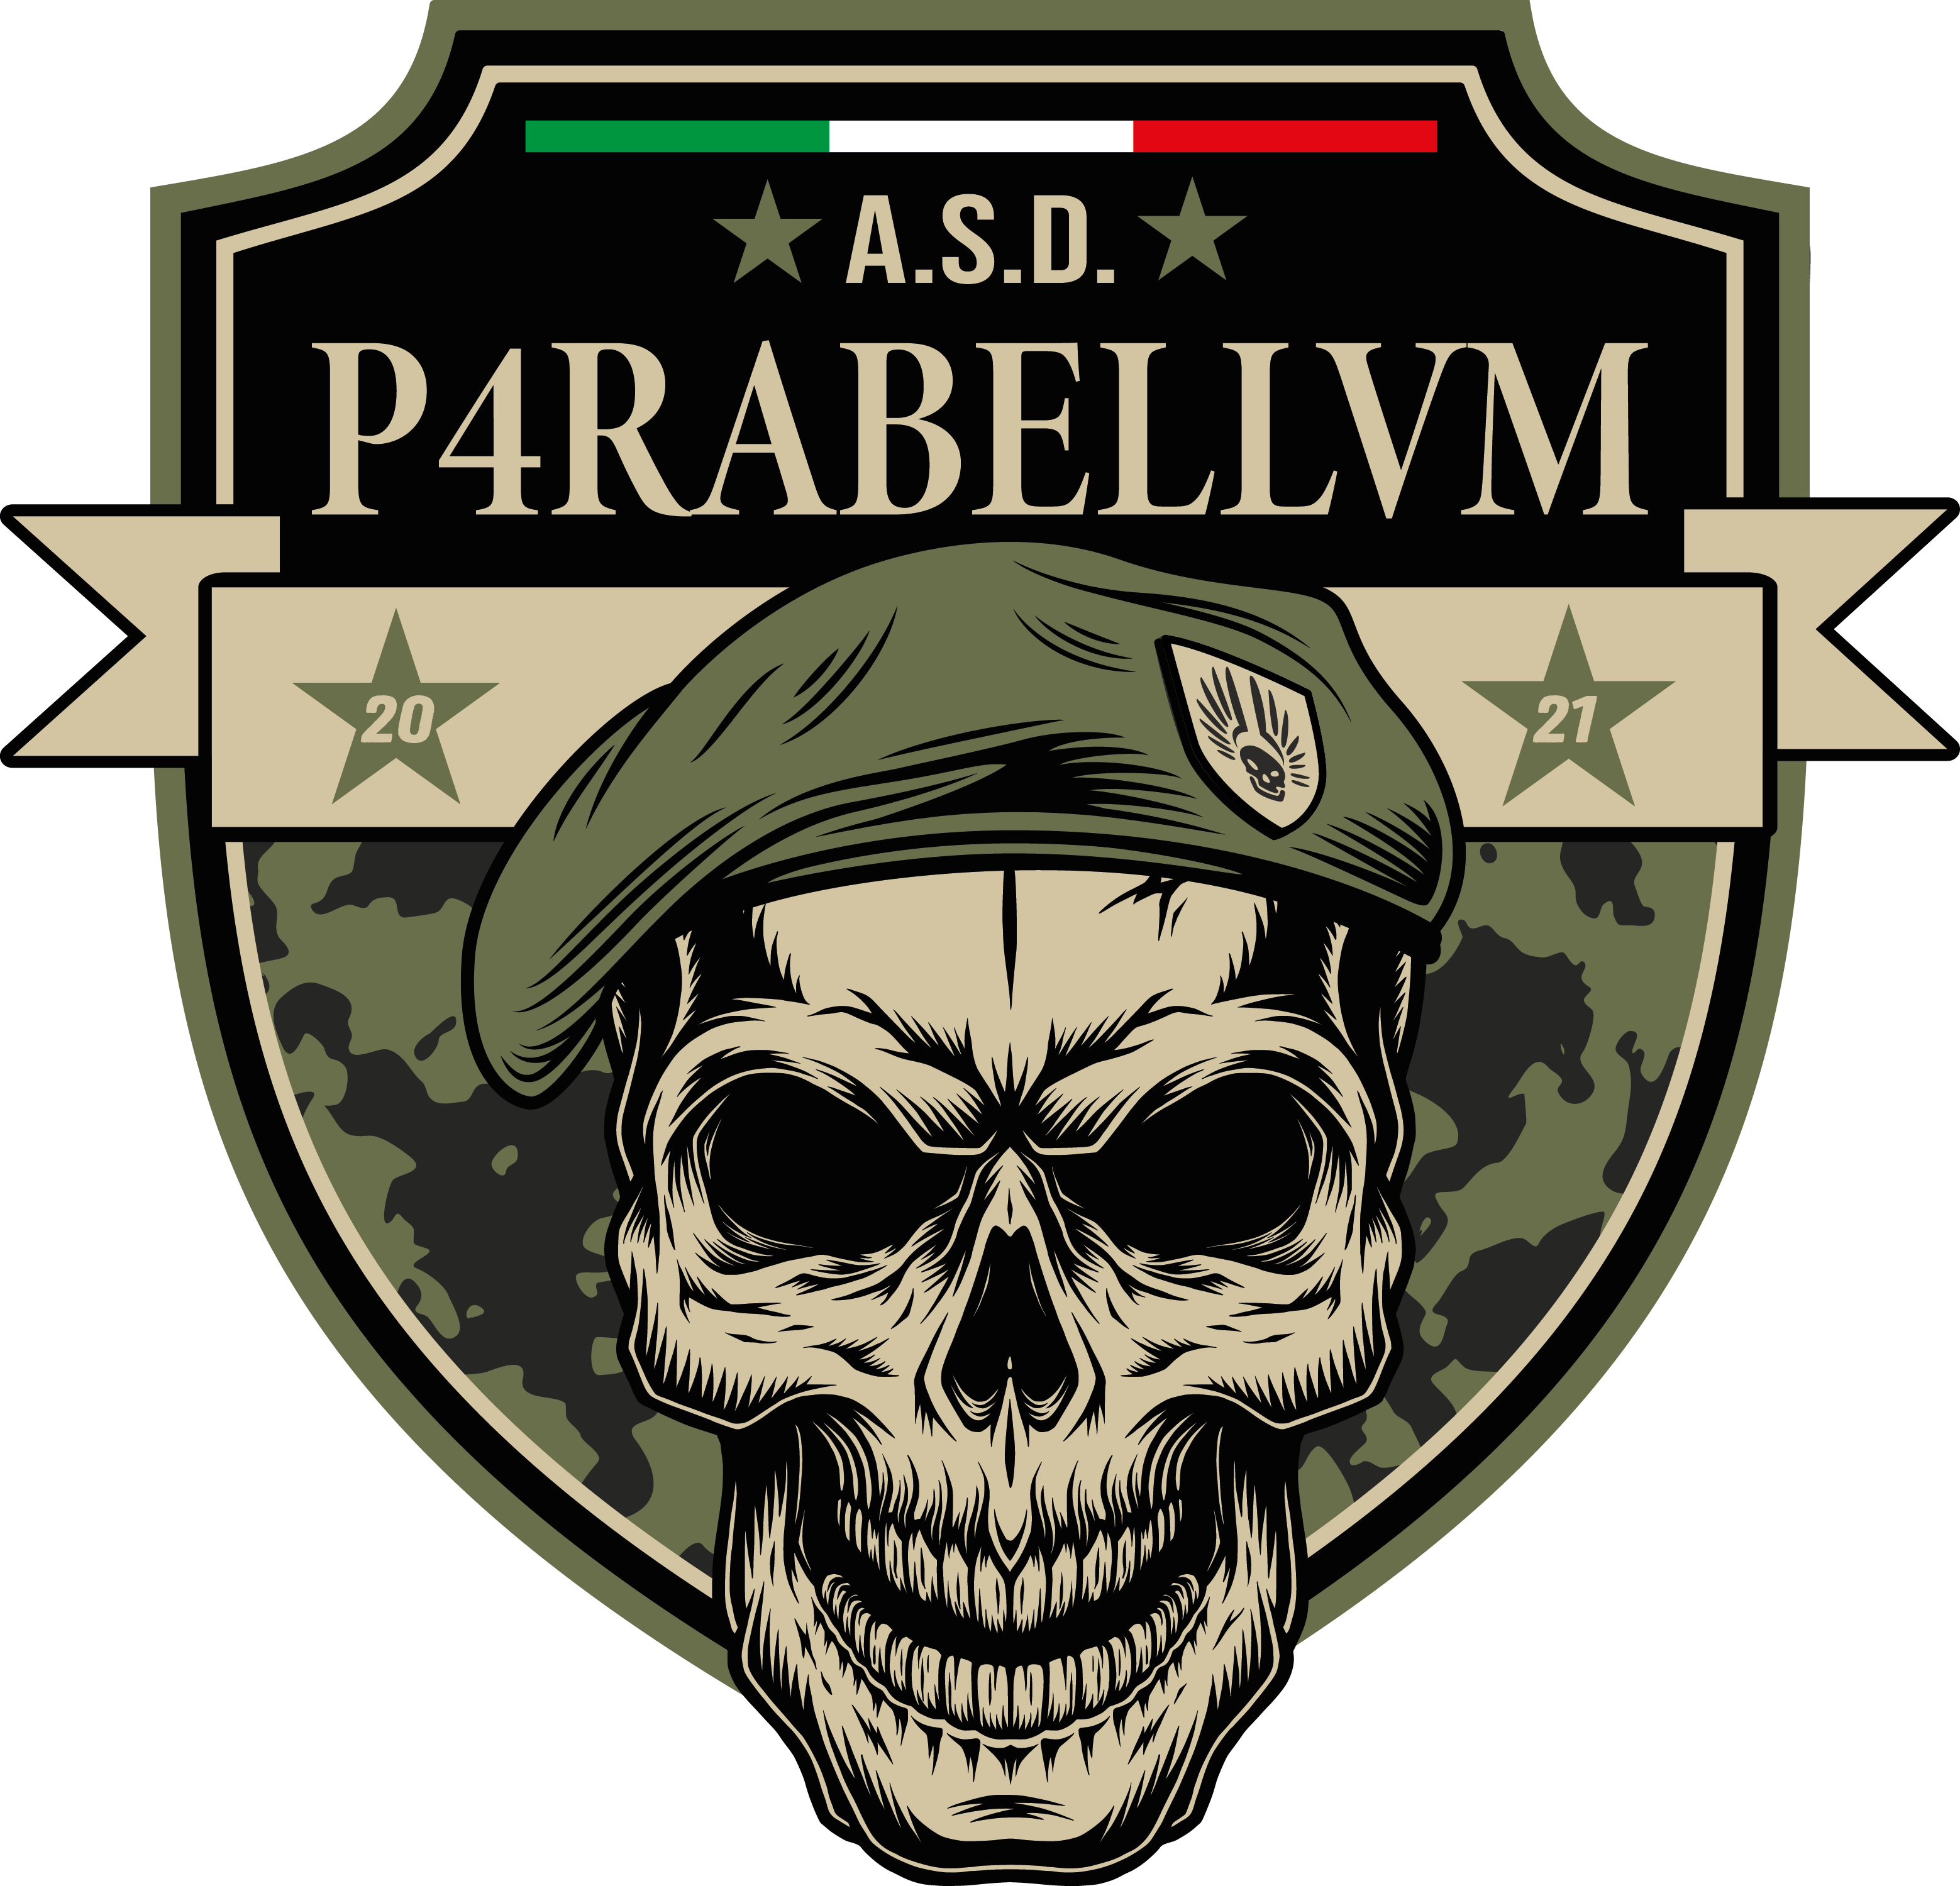 Logo P4rabellvm